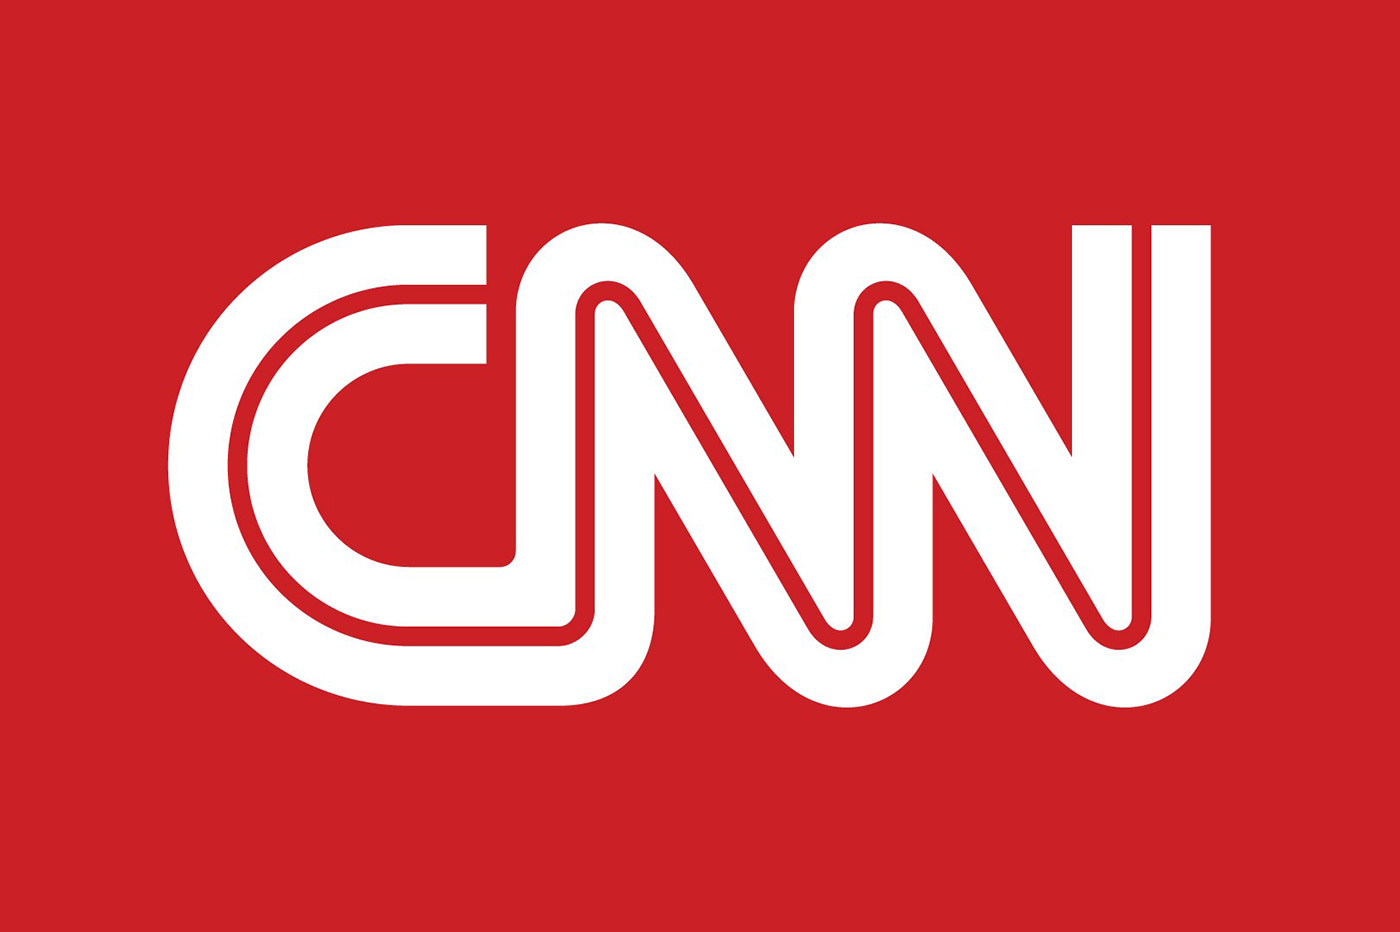 cnn-logo-white-on-red.jpg